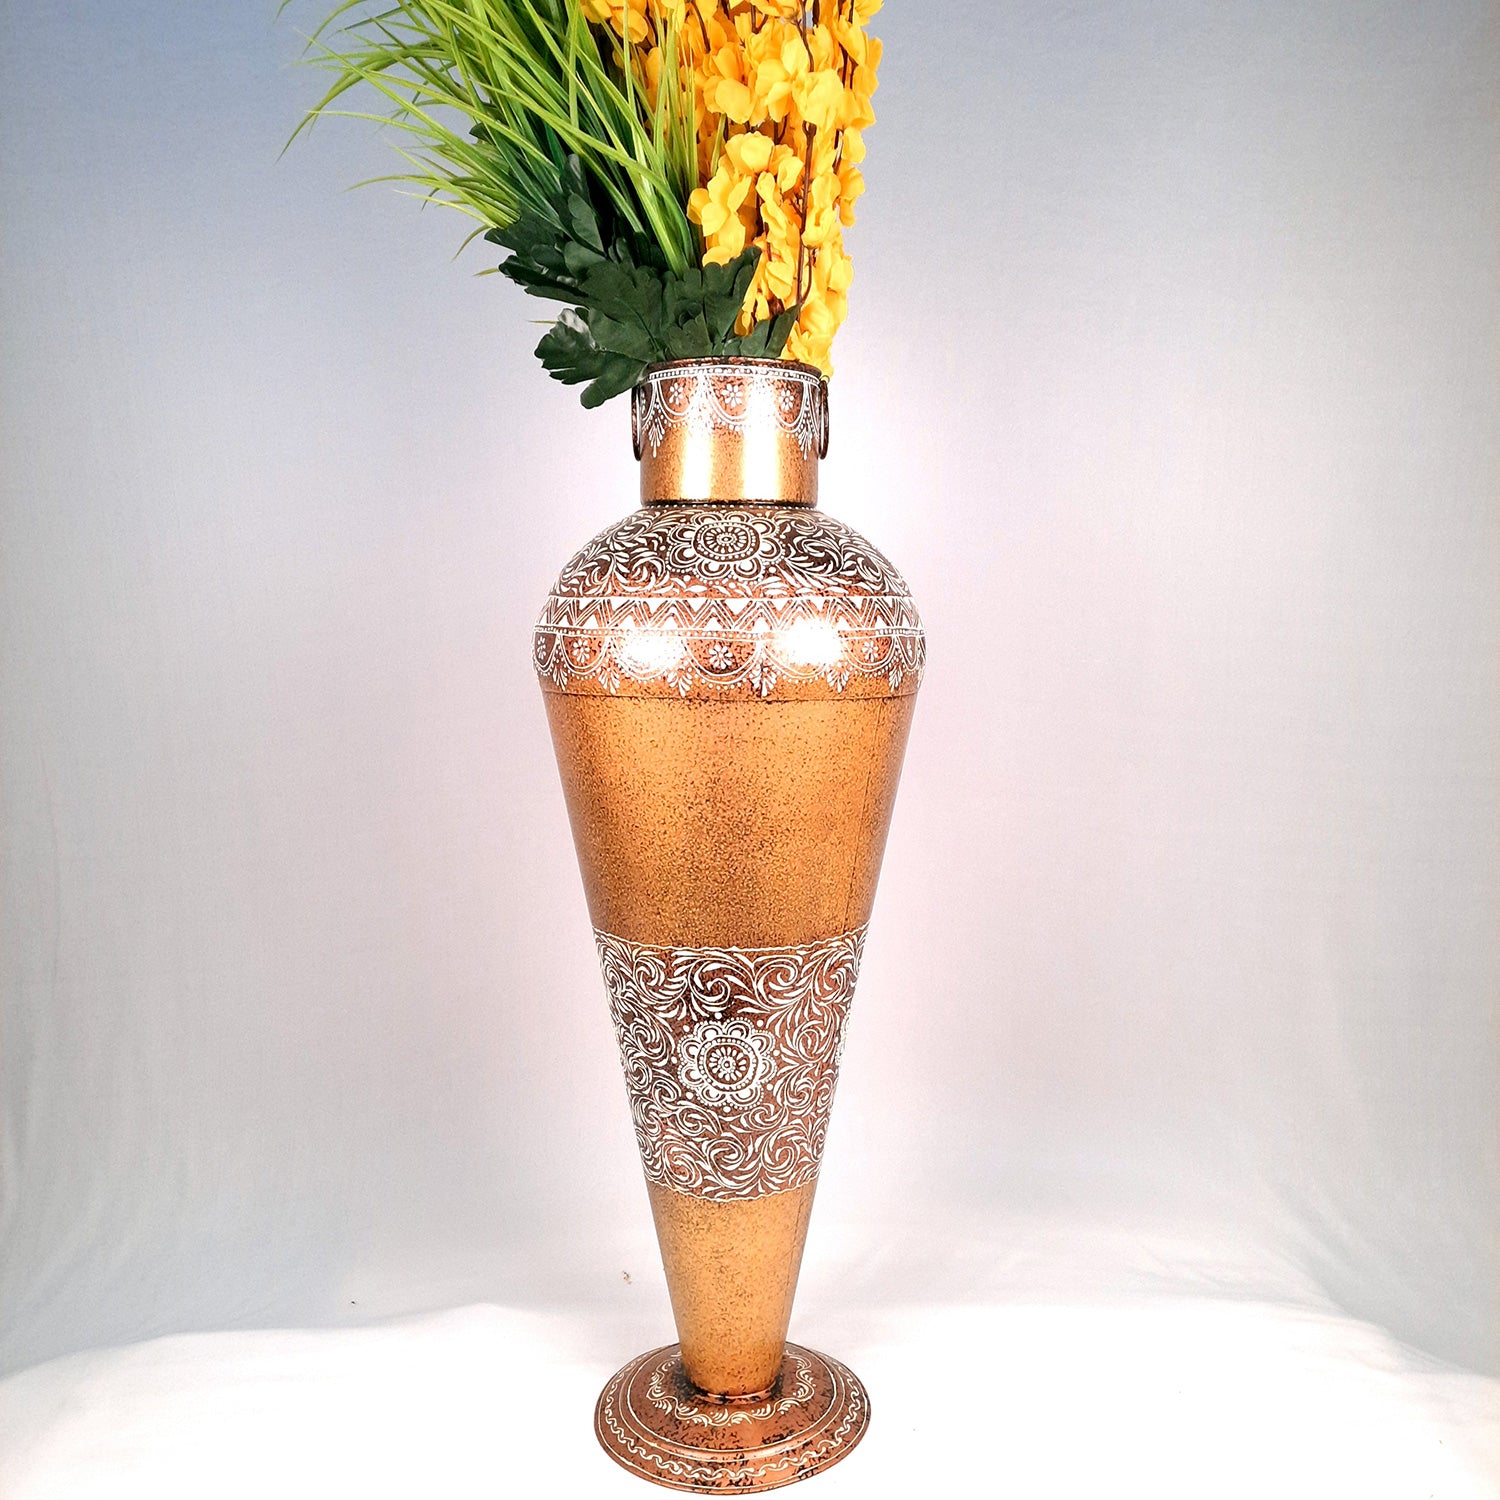 Flower Vase for Corner Decoration | Large Flower Pot - for Home, Living Room, Hallway, Entrance Decor - 32 Inch - Apkamart